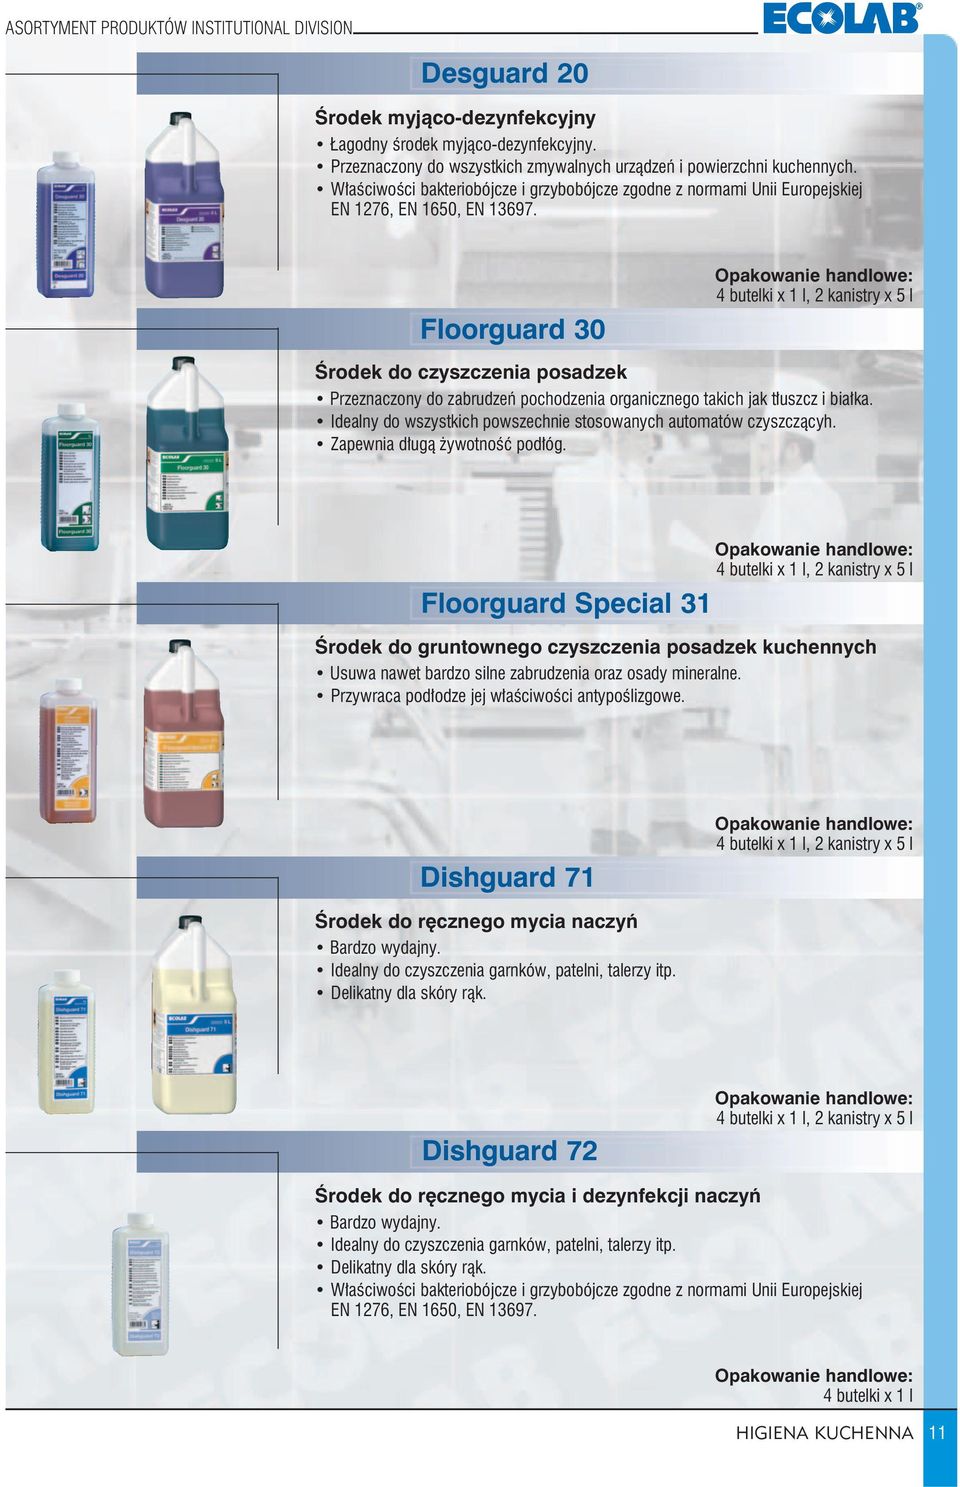 Floorguard 30 4 butelki x 1 l, 2 kanistry x 5 l Środek do czyszczenia posadzek Przeznaczony do zabrudzeń pochodzenia organicznego takich jak tłuszcz i białka.